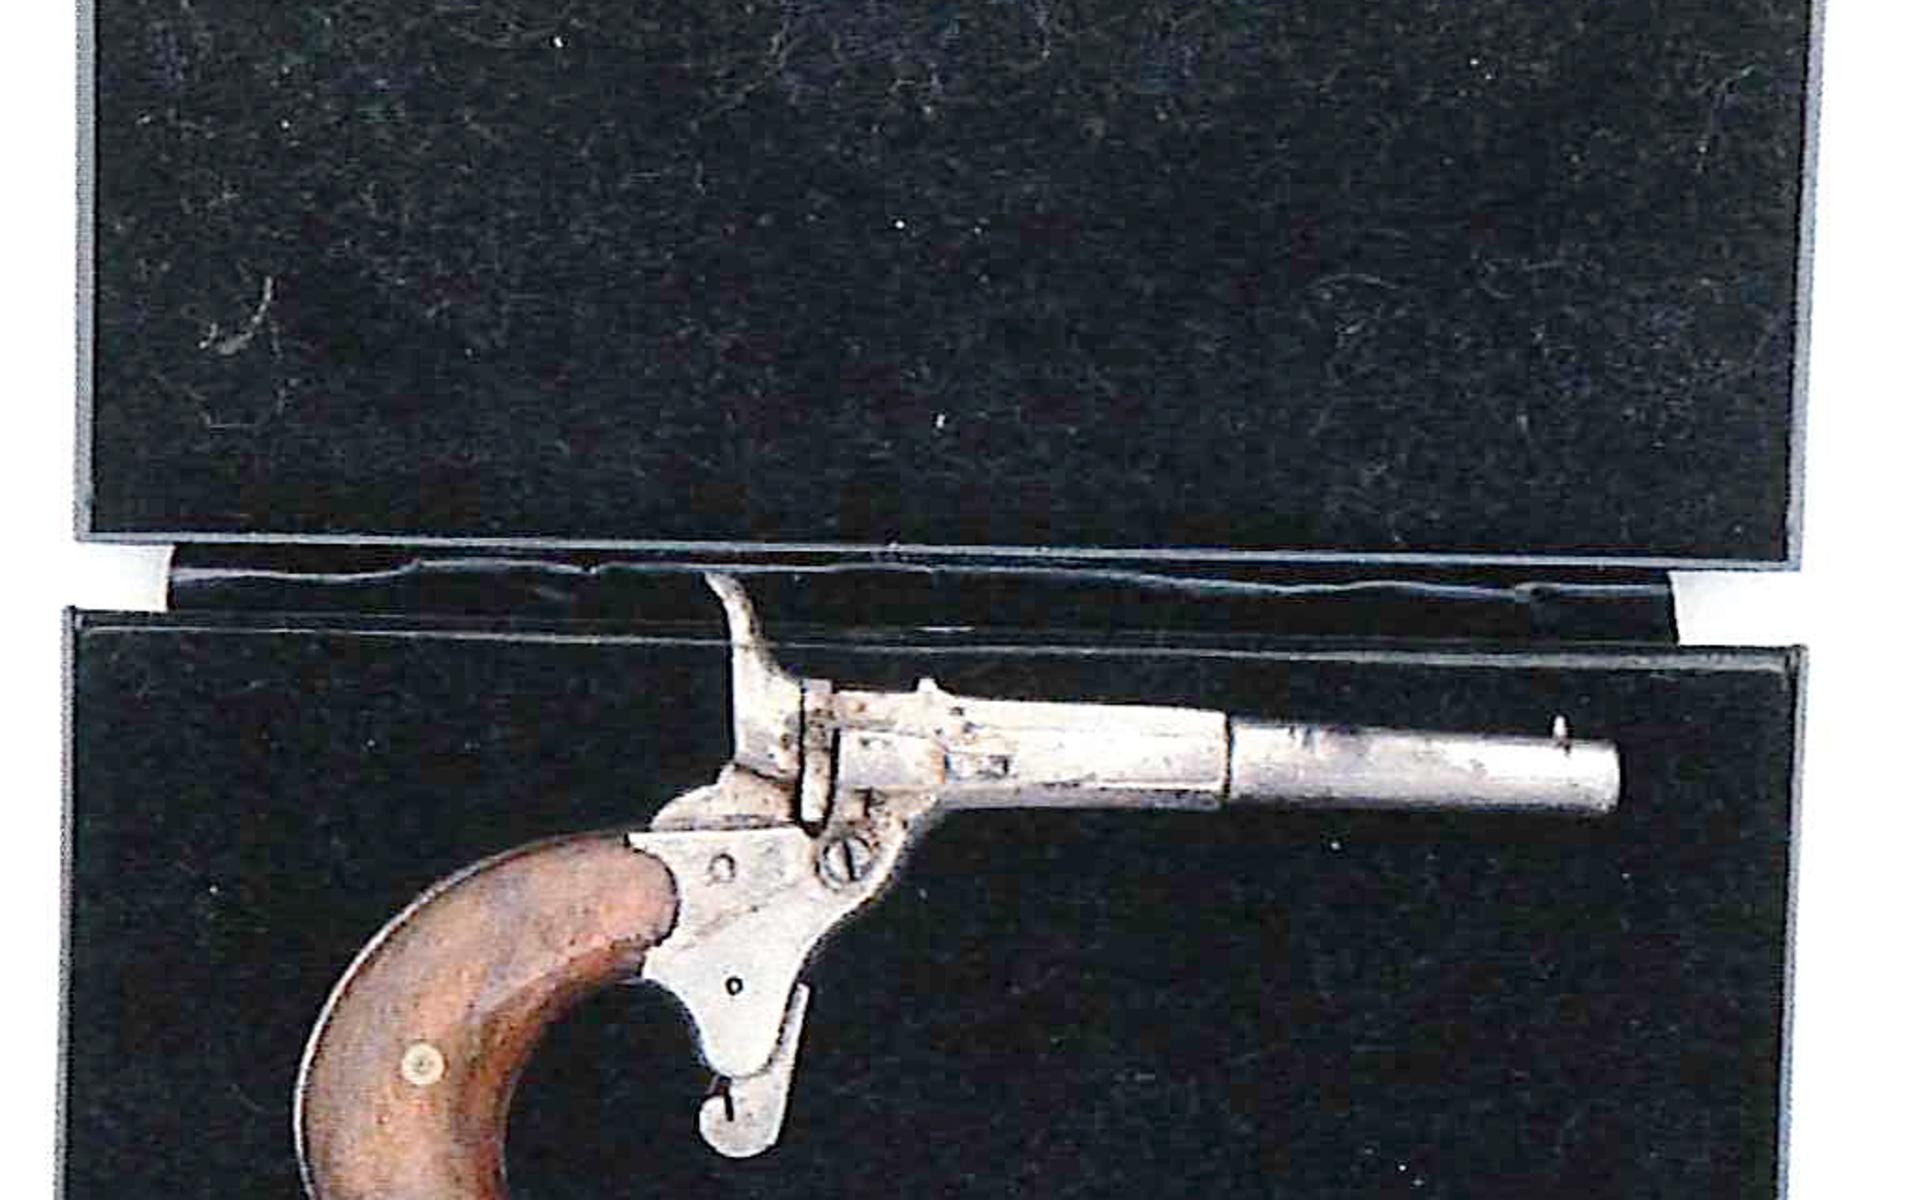 Pistolen må vara gammal, men den är ändå inte tillåten att ha menar åklagare som nu åtalar Uddevallabon.